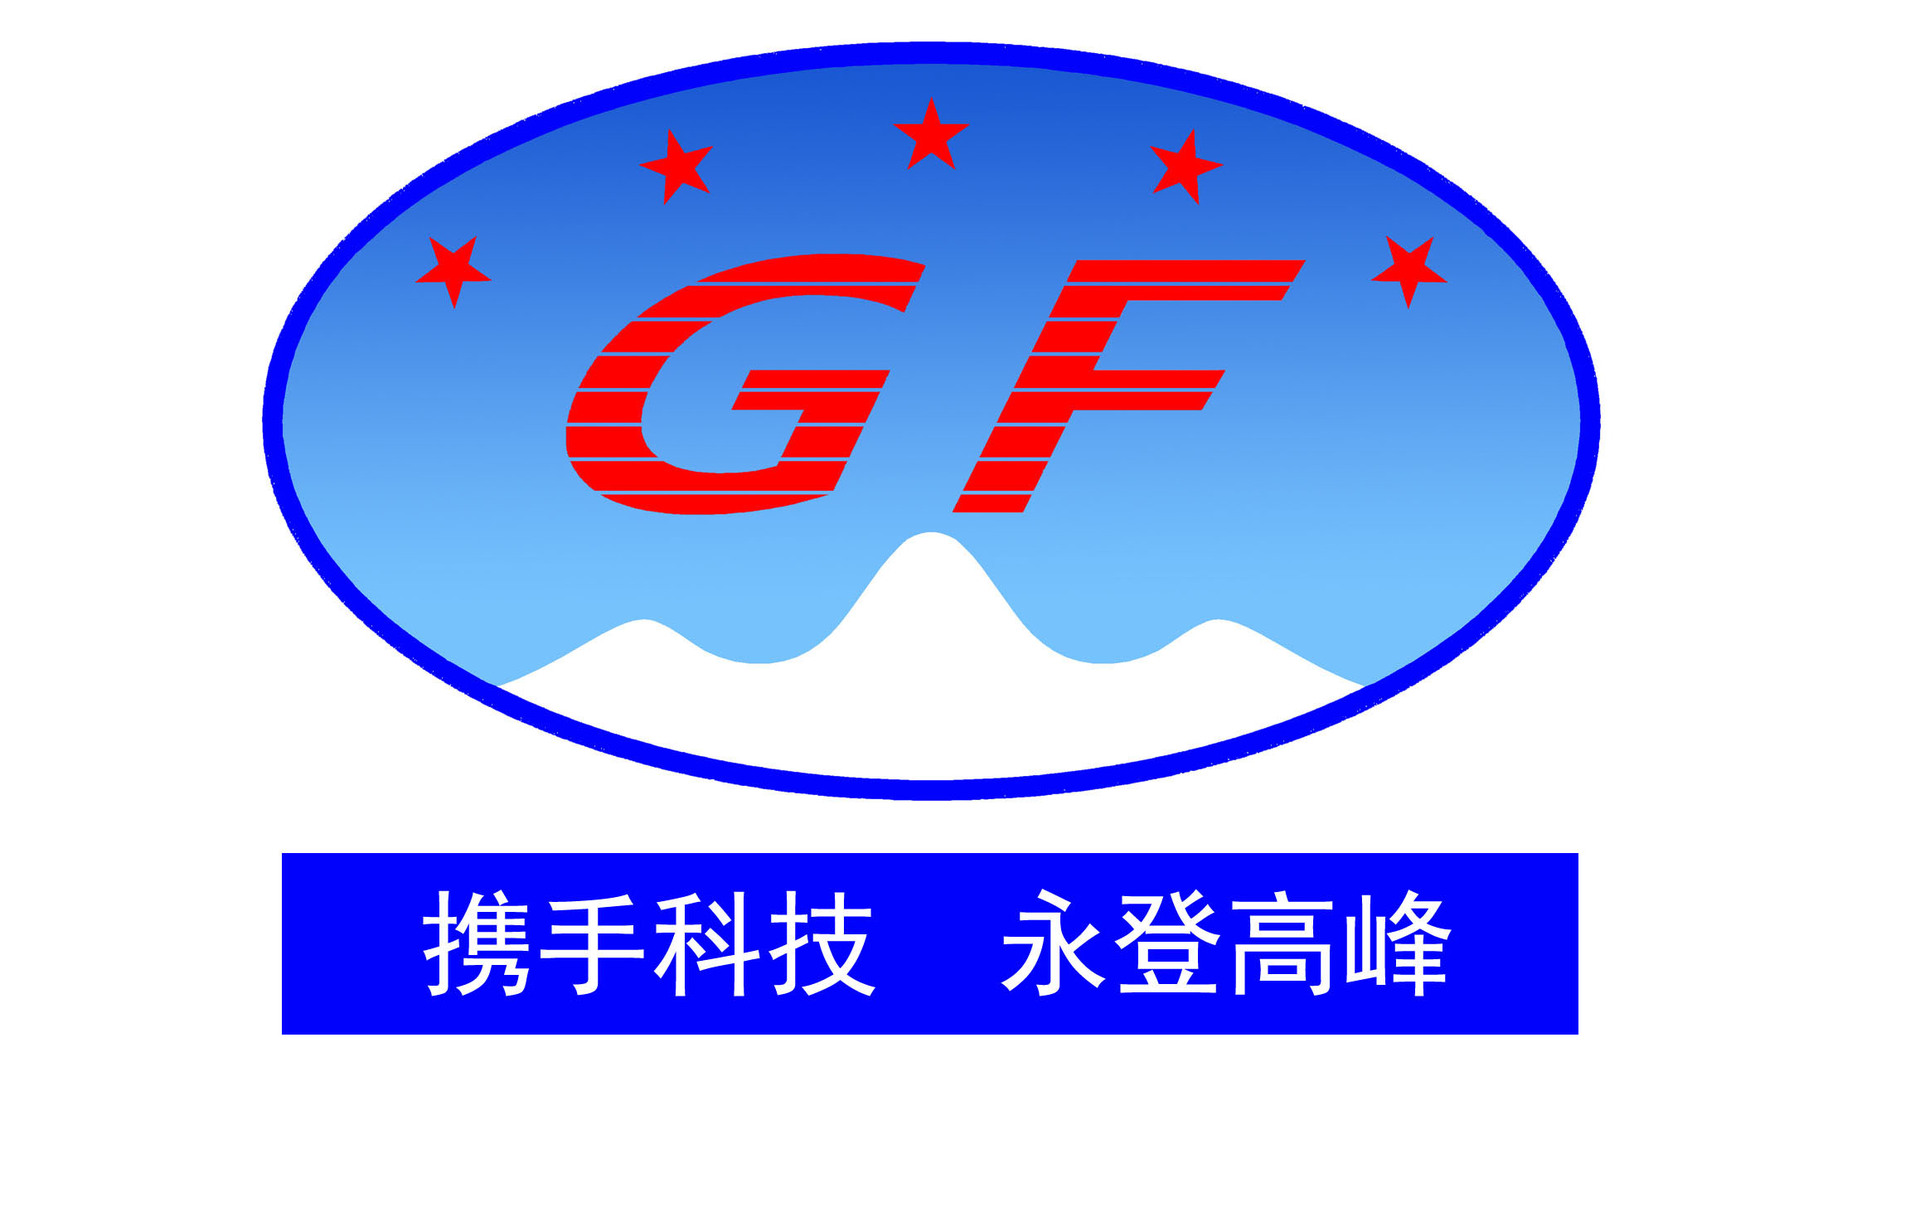 GF200-001, 脚踏开关,国峰仪器高常州国峰